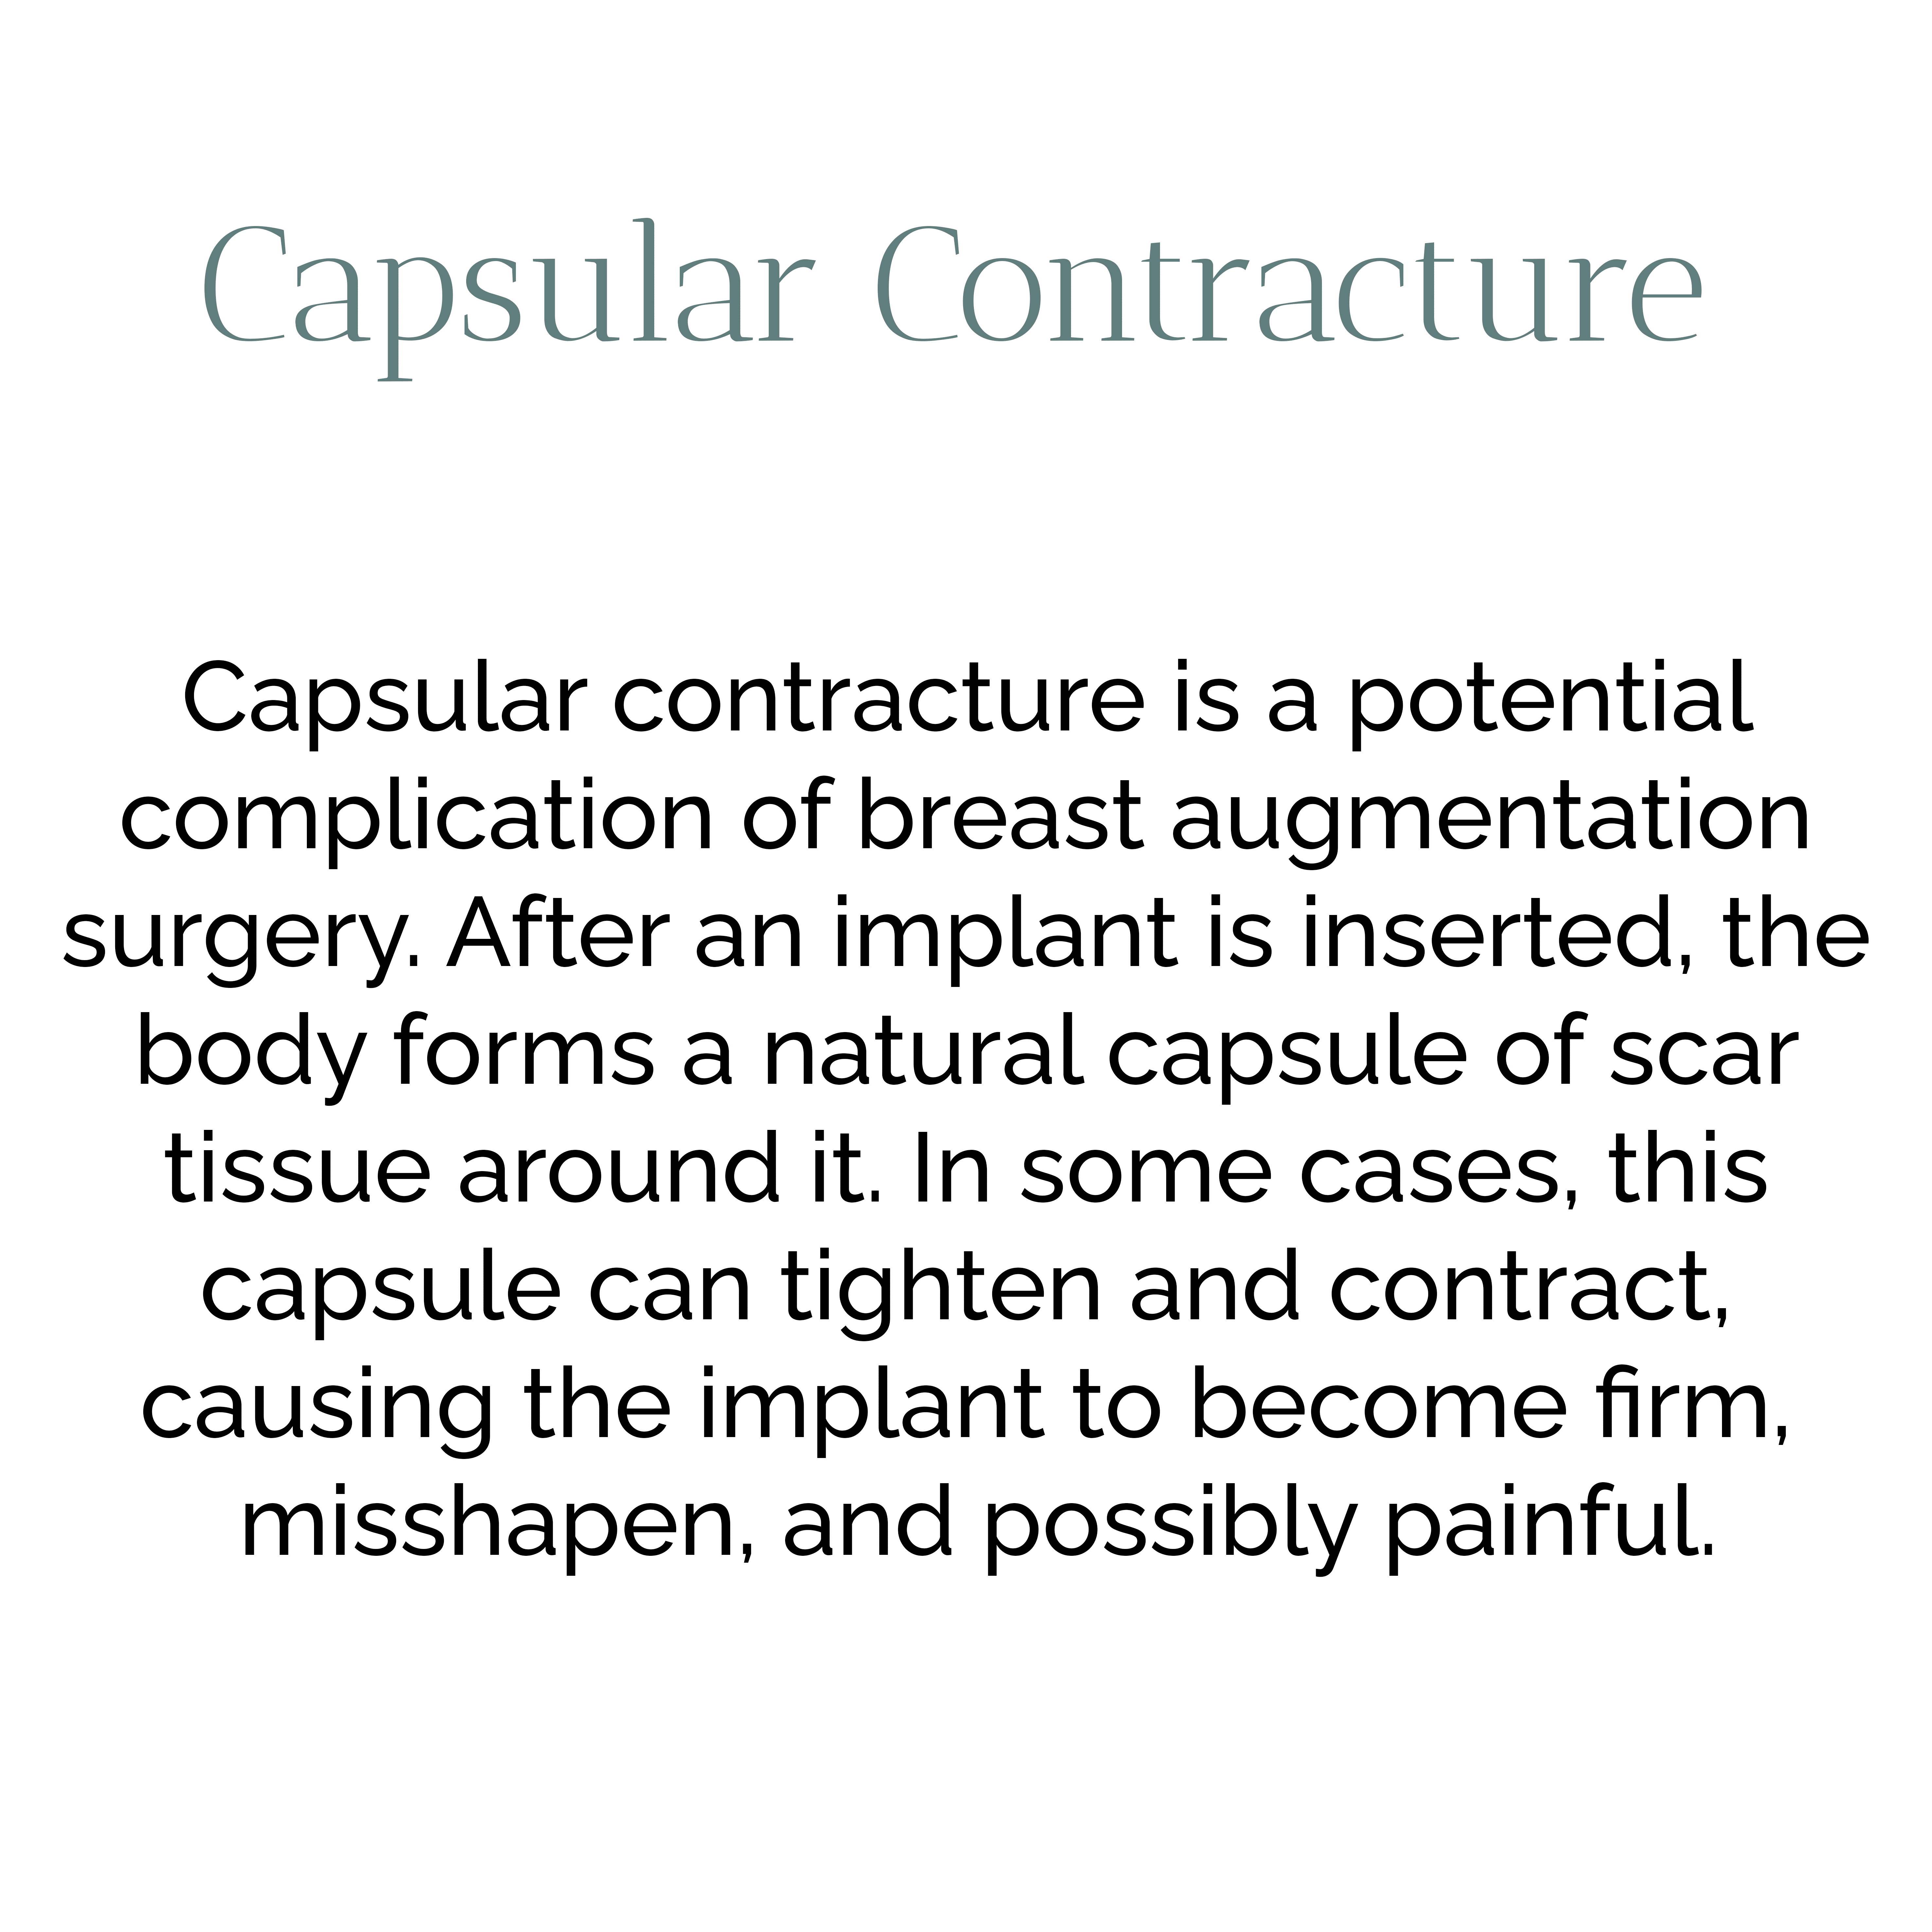 capsular contracture